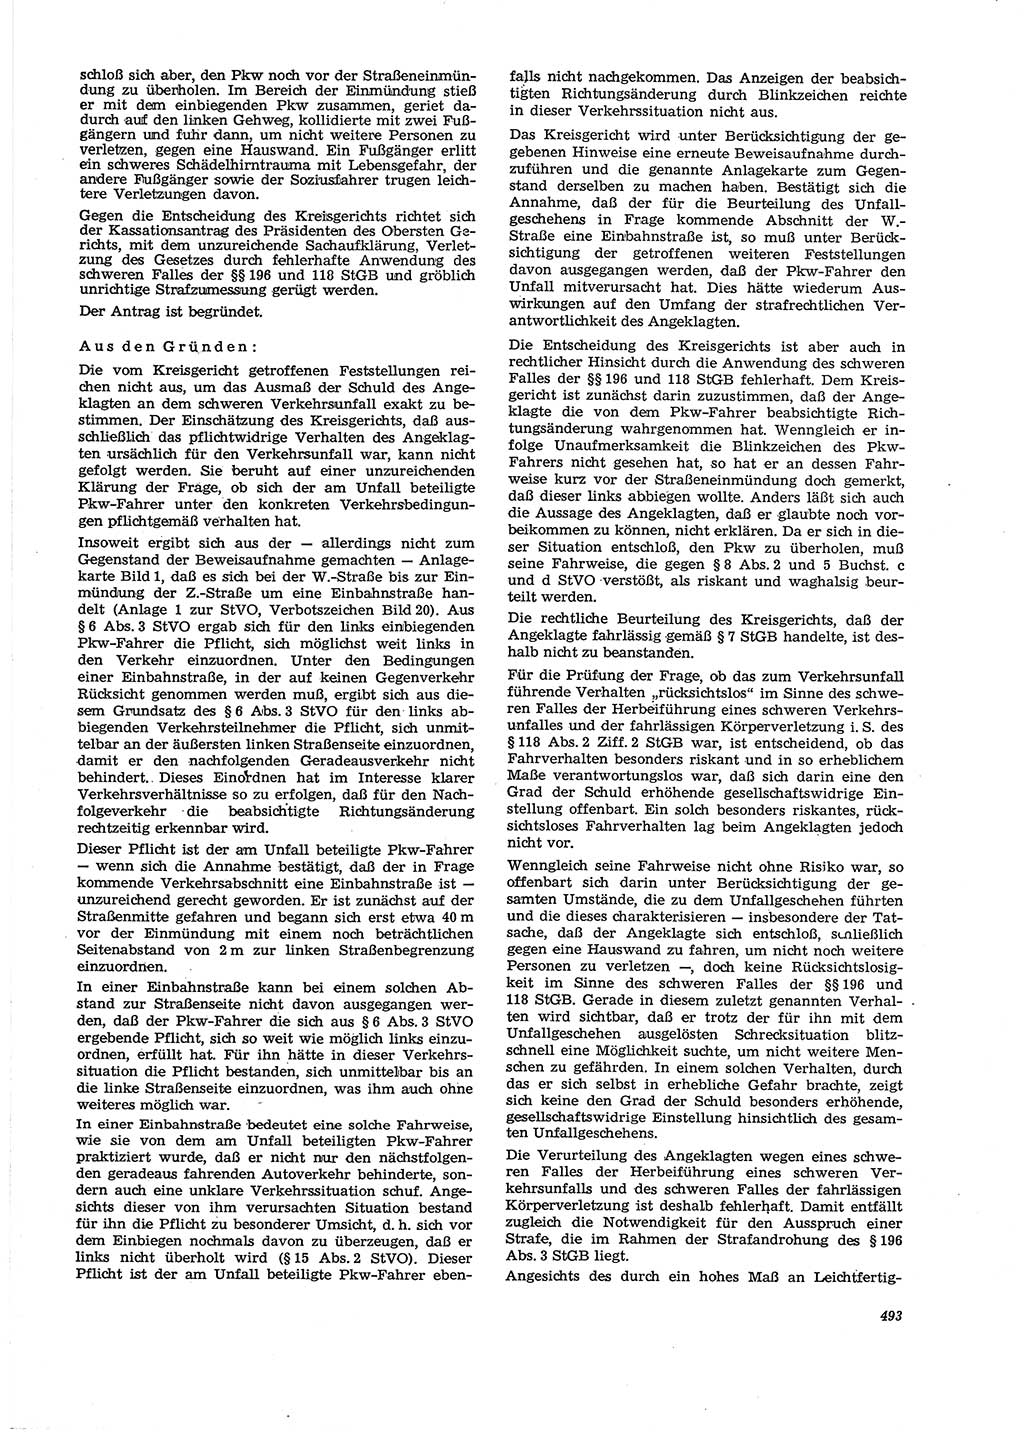 Neue Justiz (NJ), Zeitschrift für Recht und Rechtswissenschaft [Deutsche Demokratische Republik (DDR)], 29. Jahrgang 1975, Seite 493 (NJ DDR 1975, S. 493)